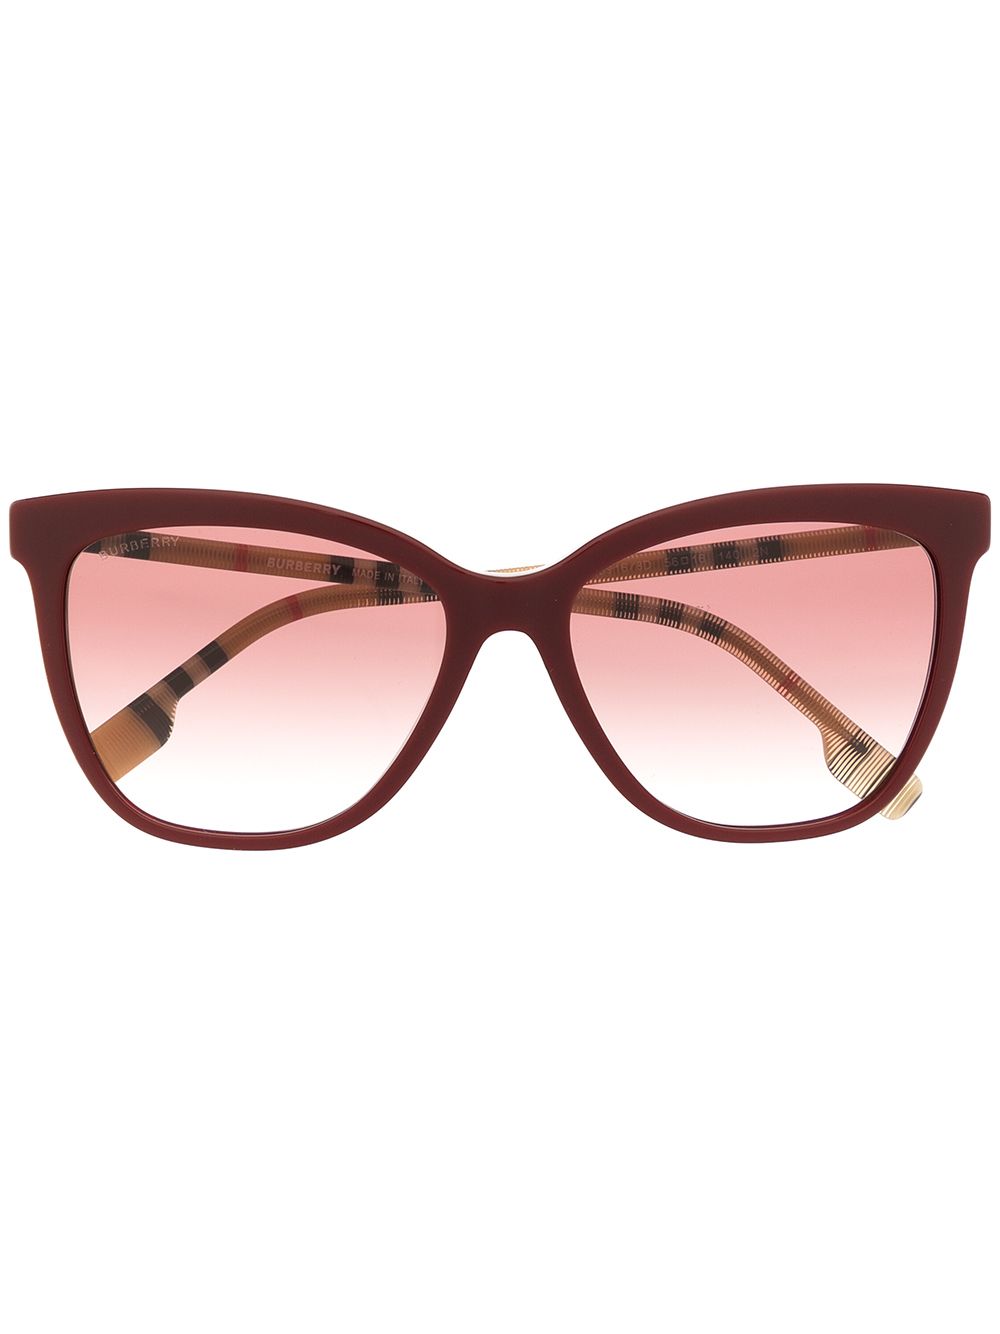 фото Burberry eyewear солнцезащитные очки clare в квадратной оправе